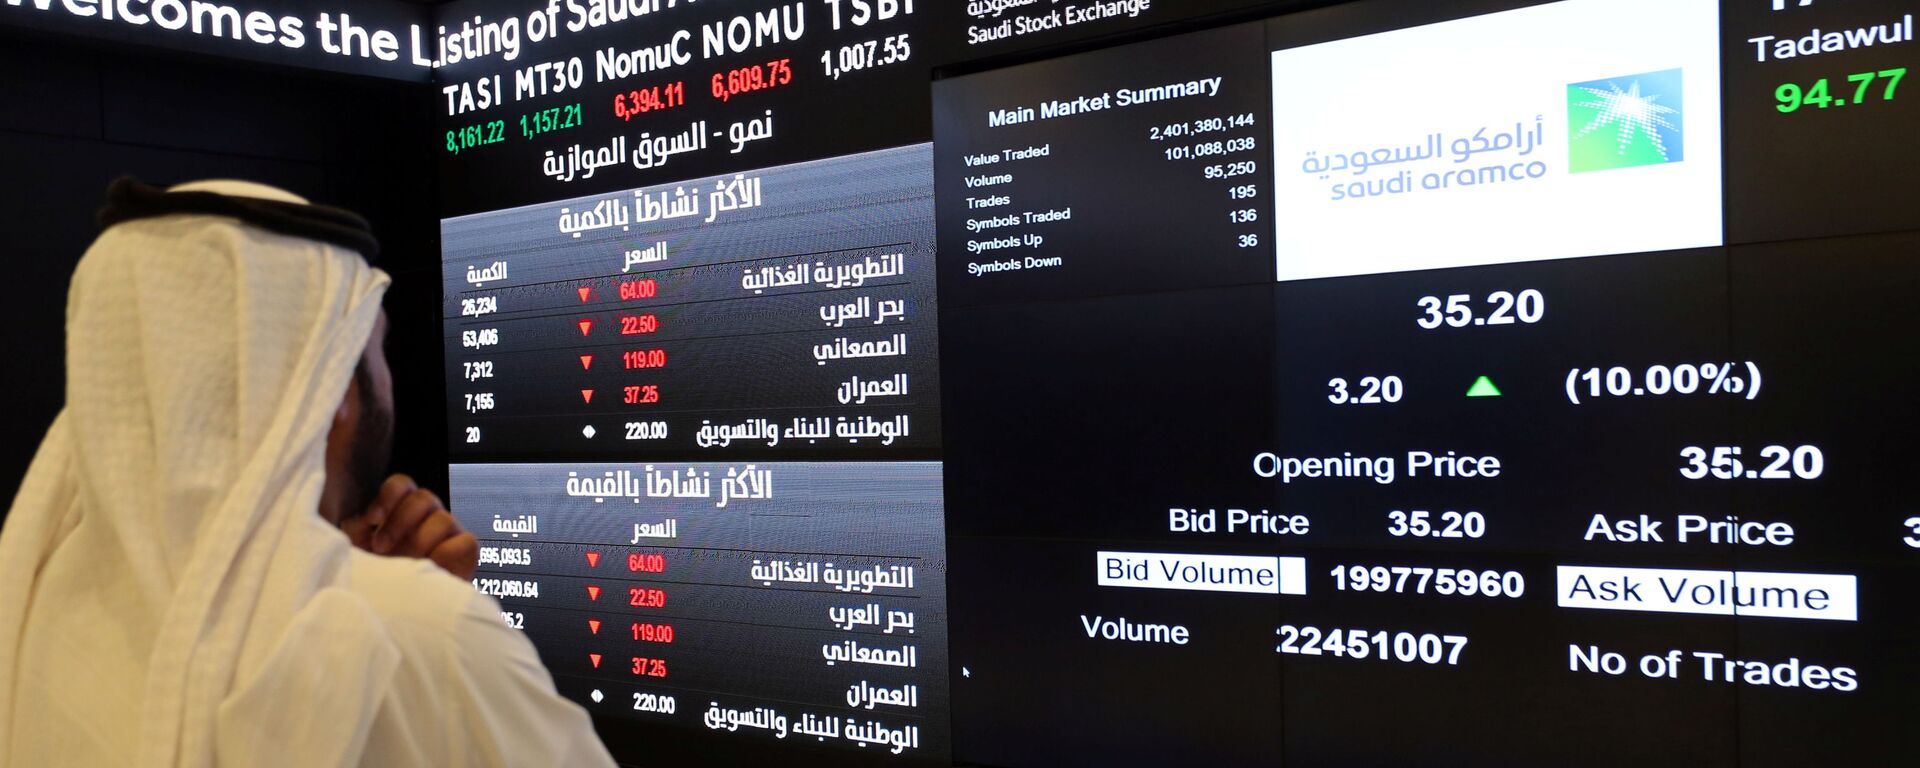 شاشة تعرض معلومات الأسهم في السوق المالية السعودية (تداول)، في الرياض، السعودية 11 ديسمبر 2019 - سبوتنيك عربي, 1920, 01.04.2021